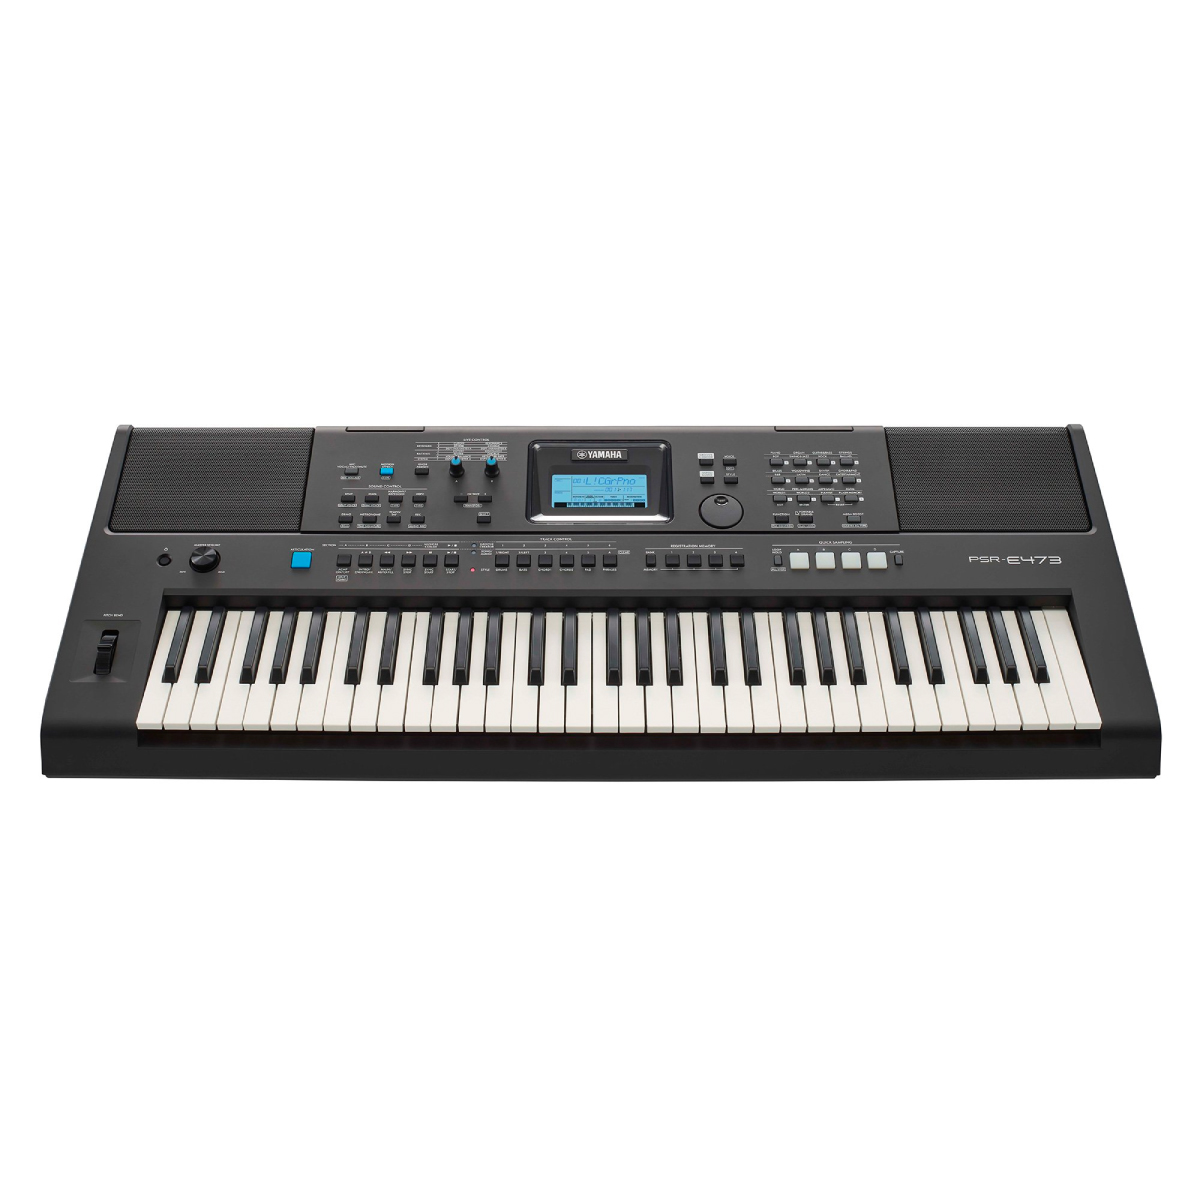 Đàn Organ điện tử, Portable Keyboard - Yamaha PSR-E473 (PSR E473) - Bước tiến cách mạng trong nhạc cụ keyboard di động - Hàng chính hãng